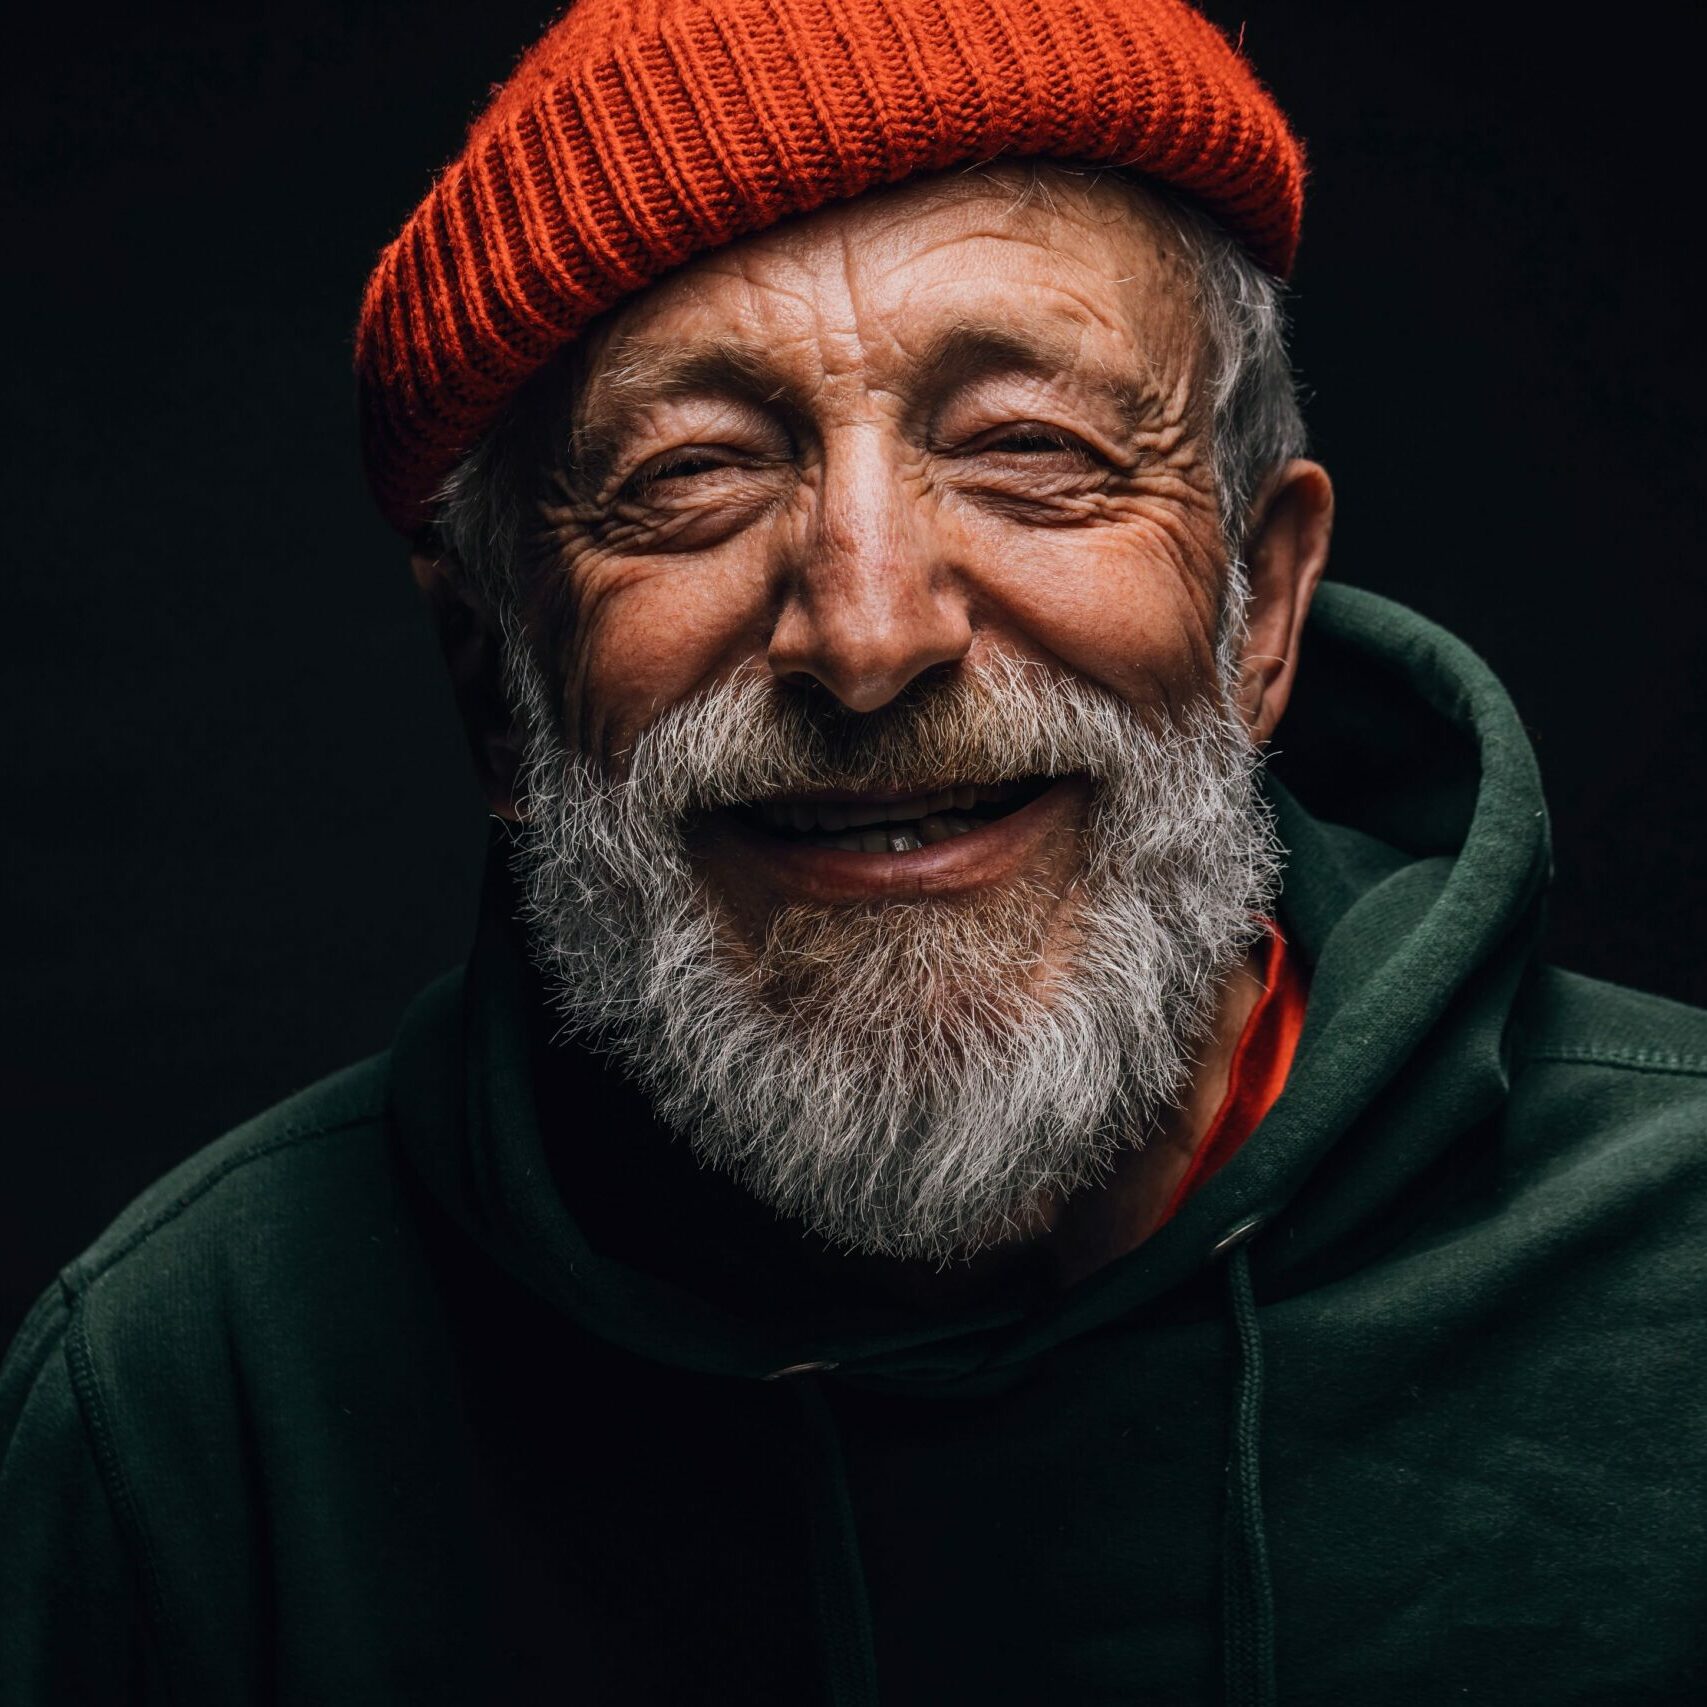 Ein alter, freundlich lächelnder Herr mit grauem Bart, einer roten Woll-Strickmütze und dunkelgrünemHoodie.